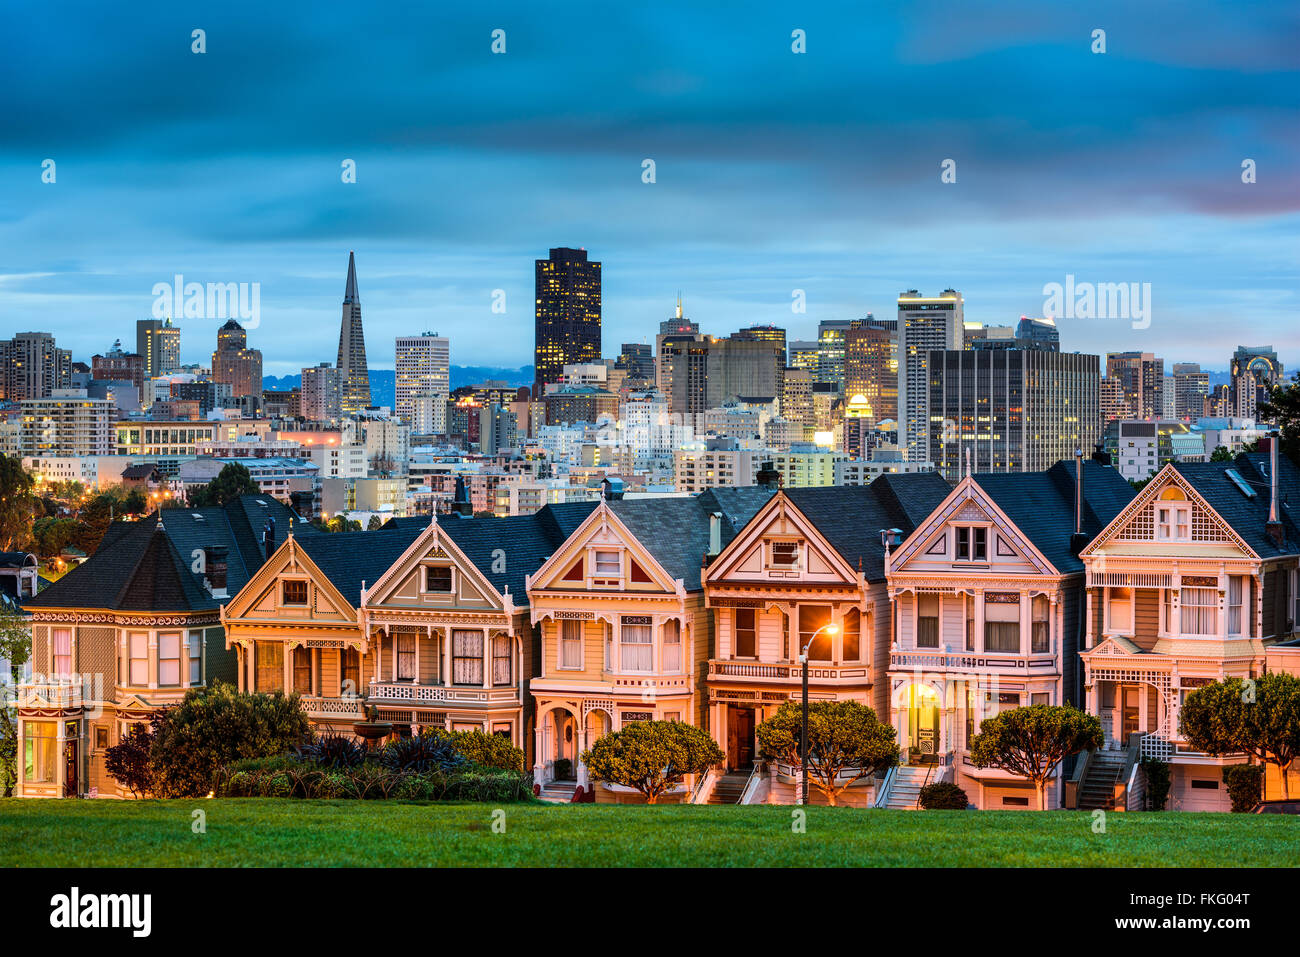 San Francisco, California cityscape at Alamo Square. Stock Photo